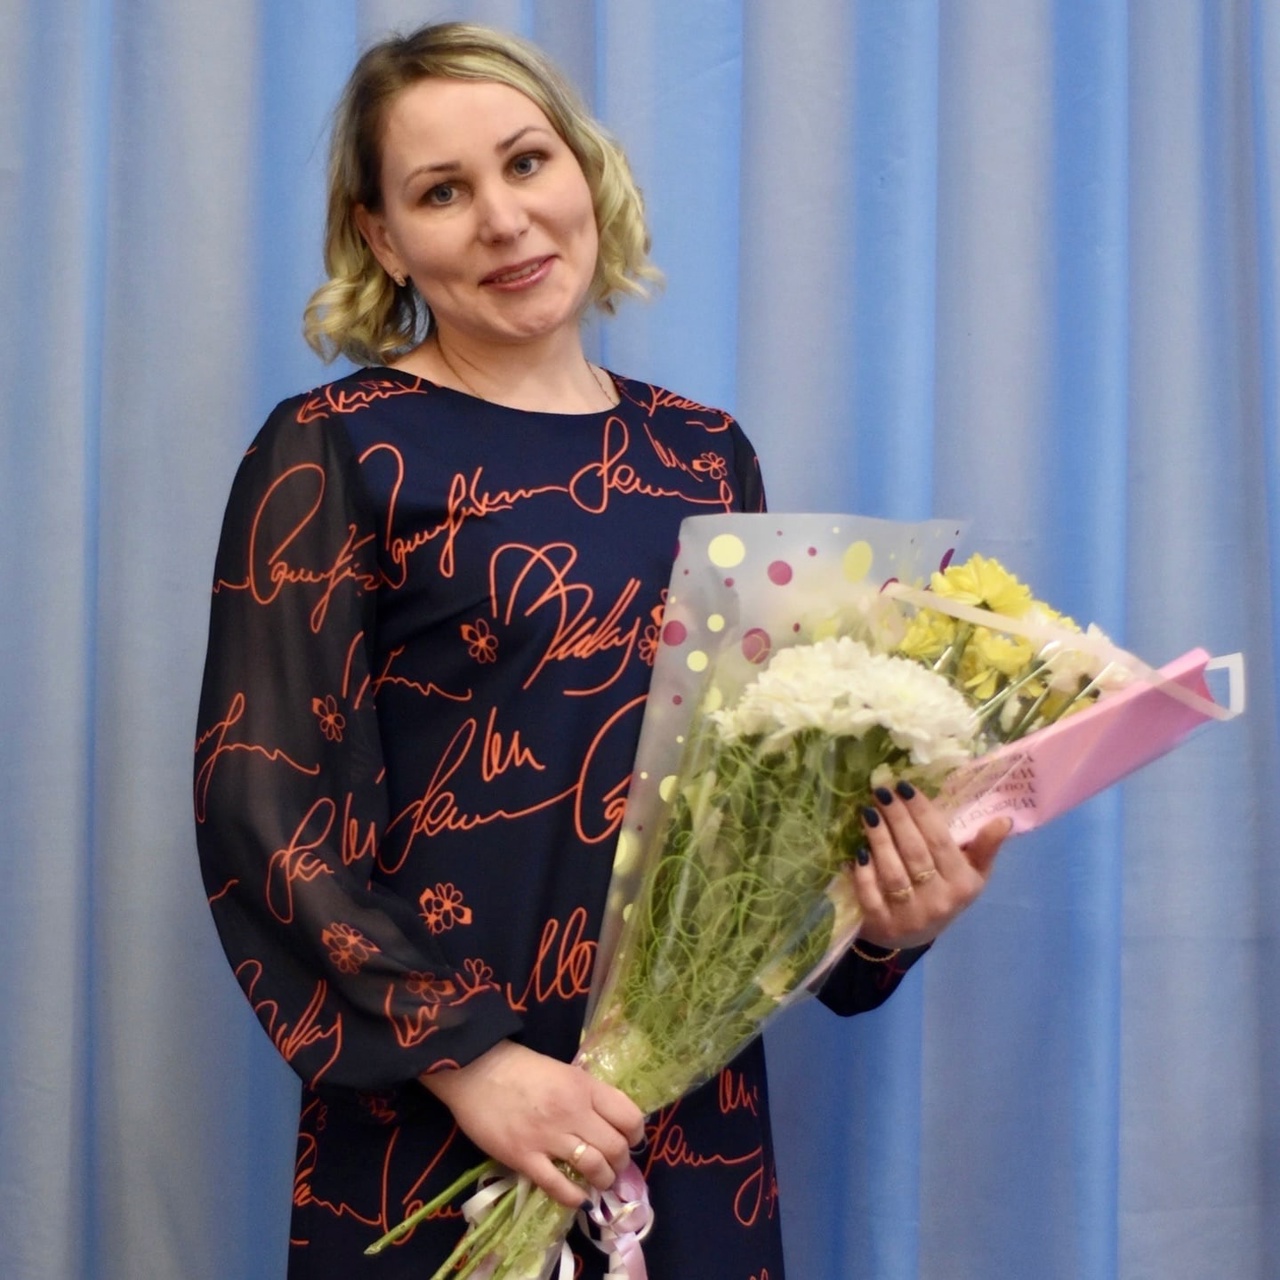 В номинации «Социальная работа» муниципального конкурса «Женщина года» стала Наталья Кичигина, специалист по социальной работе Комплексного центра социального обслуживания населения».